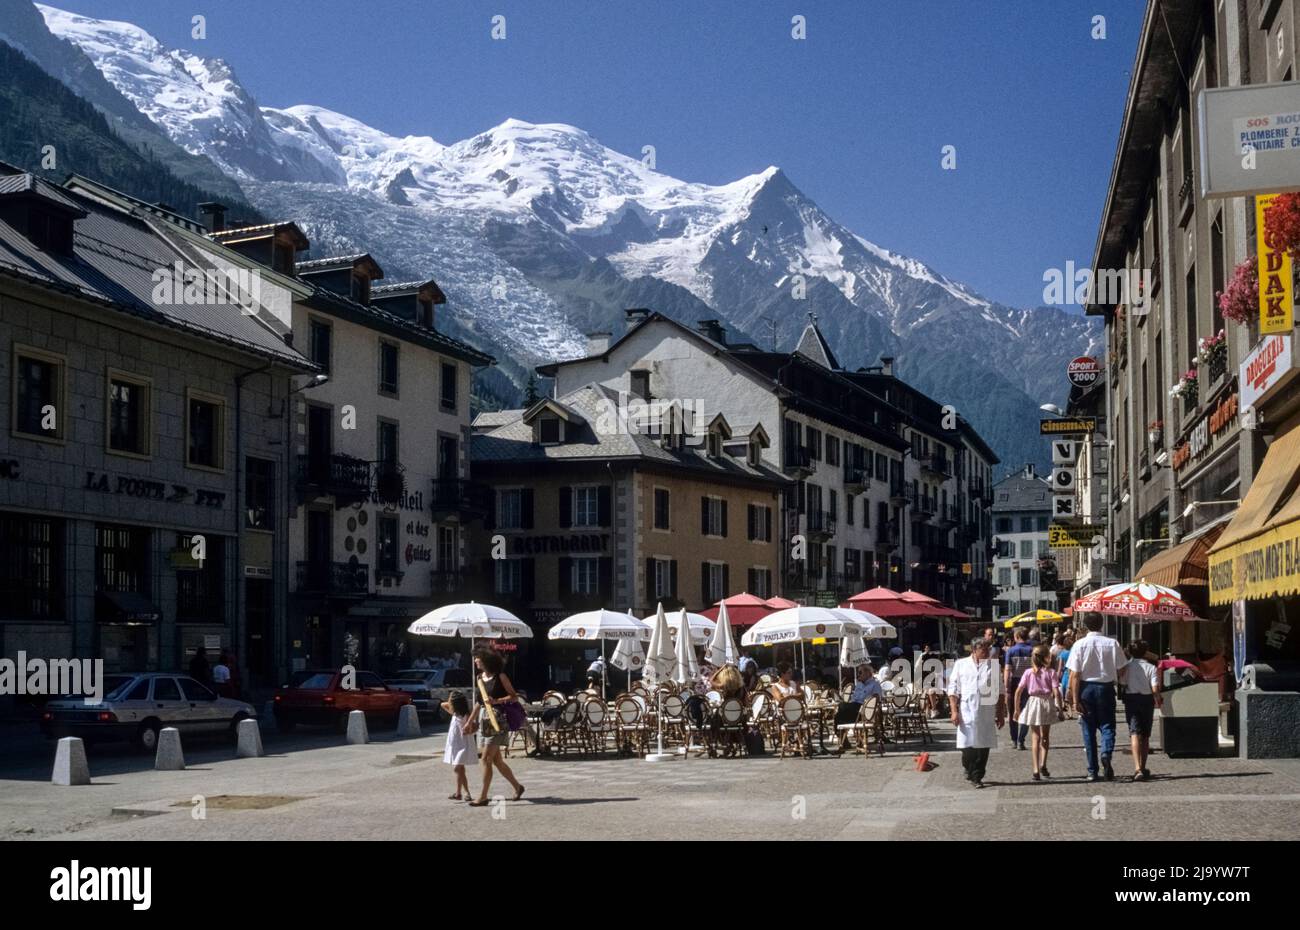 Cafés avec parasols, passants et voitures. Le massif du Mont blanc avec le Dôme du Gouter en arrière-plan. Place Balmat, Chamonix-Mont-blanc, France 1990 Banque D'Images